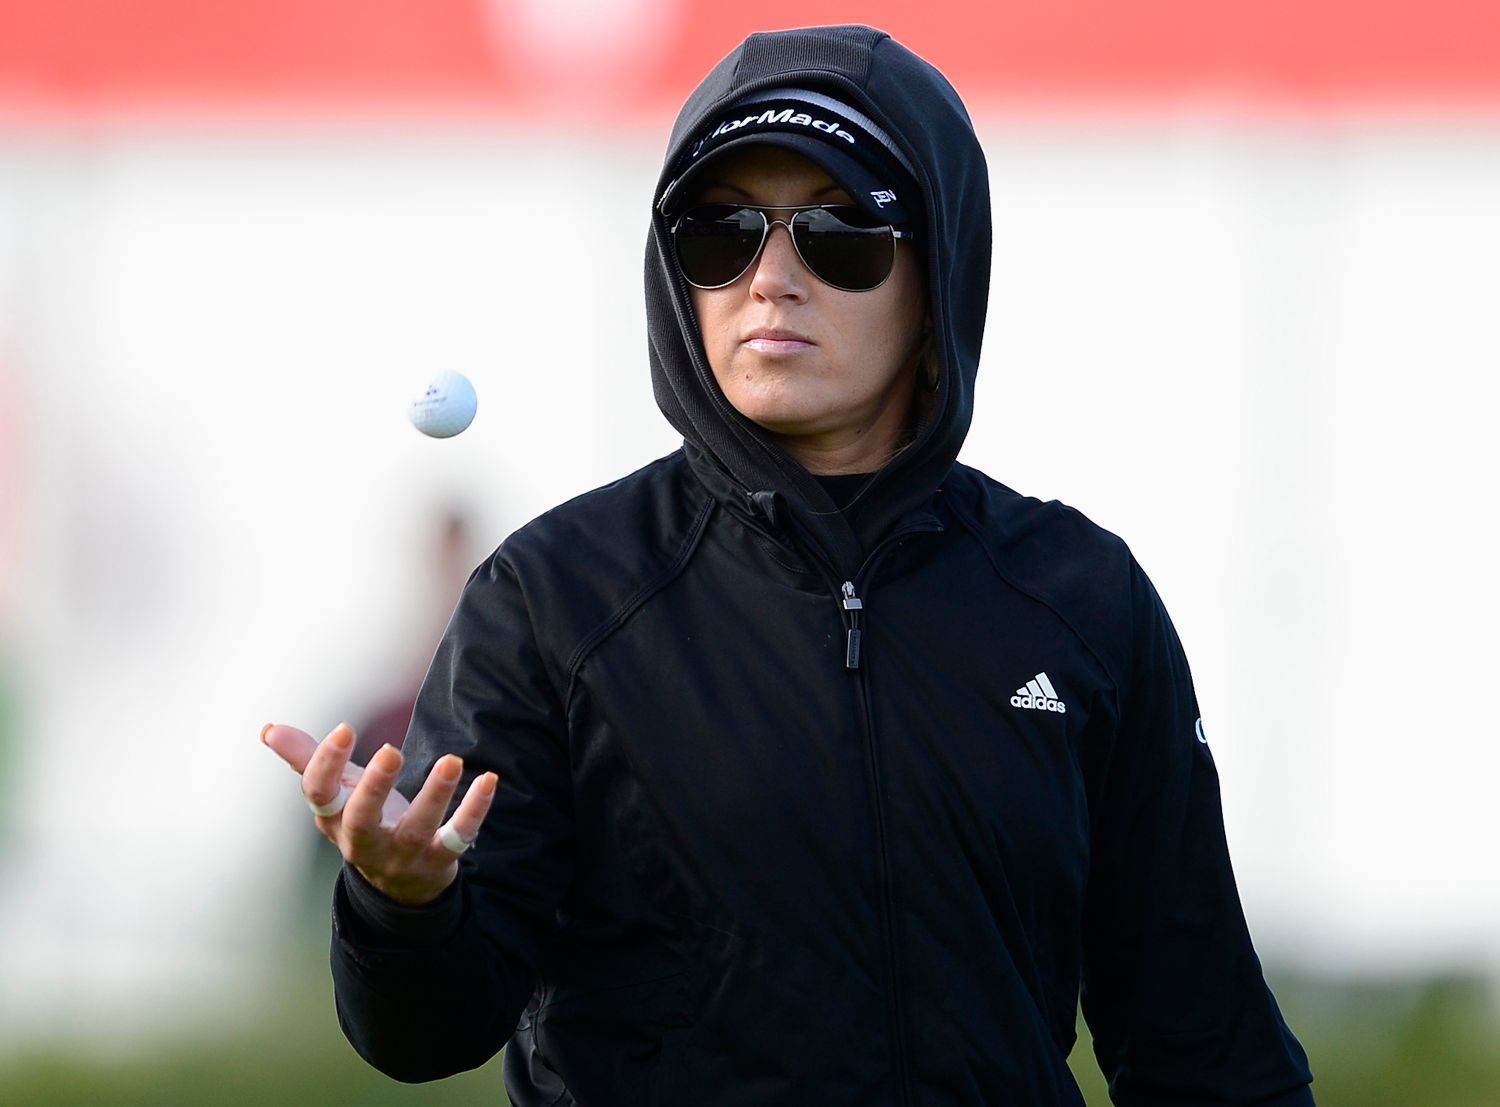 Golfistky v prvním kole na ženském turnaji British Open Golf 2012 v liverpoolském Royal Golf Clubu.